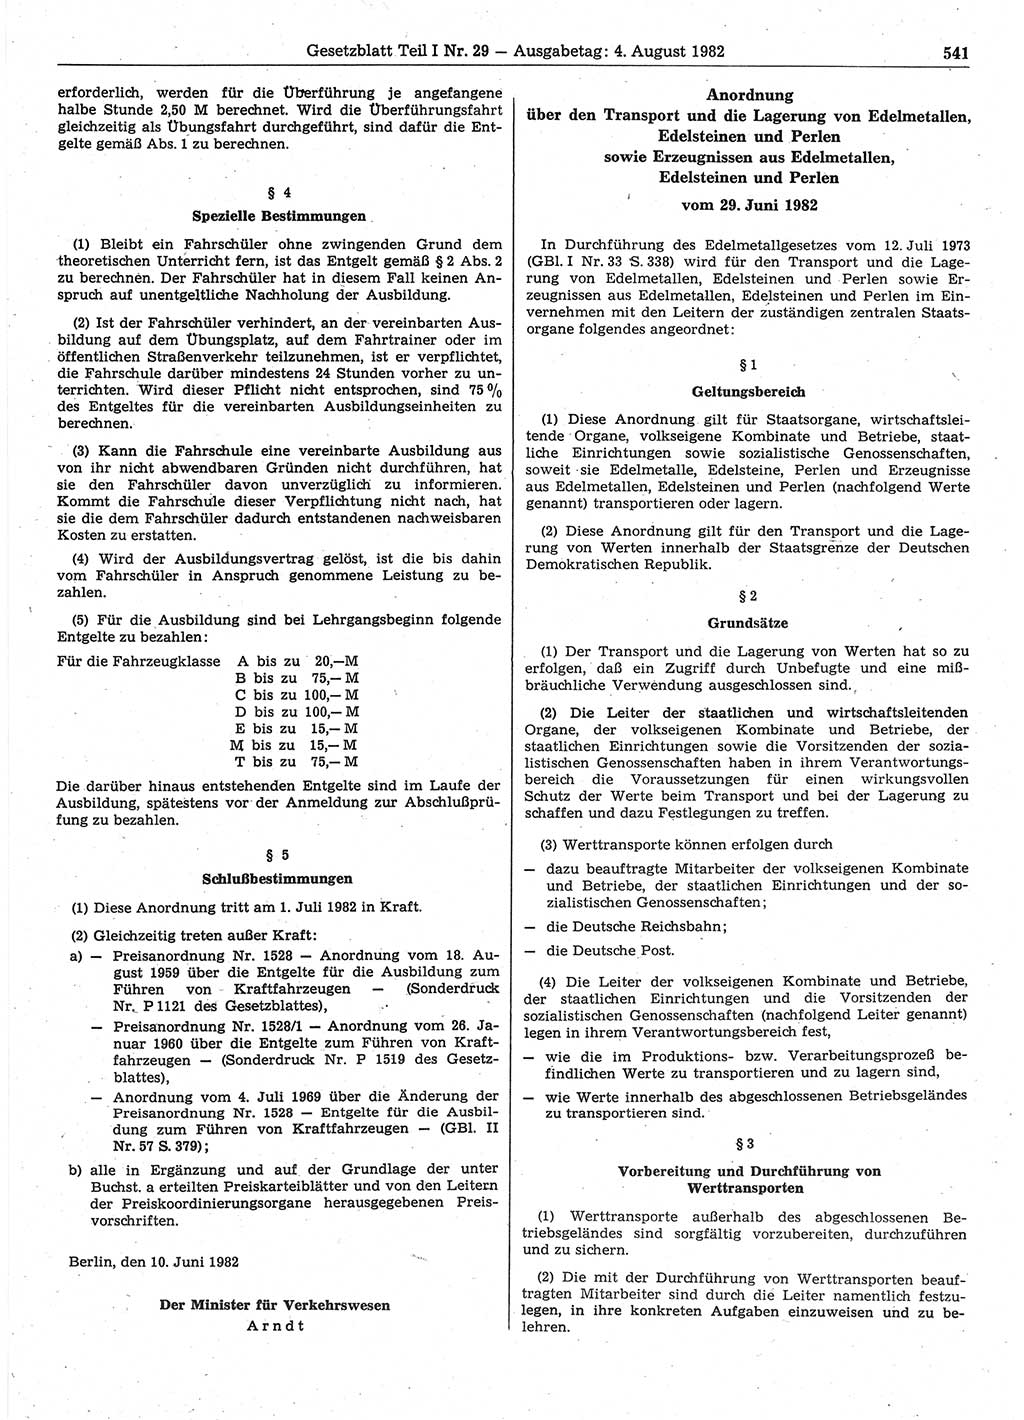 Gesetzblatt (GBl.) der Deutschen Demokratischen Republik (DDR) Teil Ⅰ 1982, Seite 541 (GBl. DDR Ⅰ 1982, S. 541)